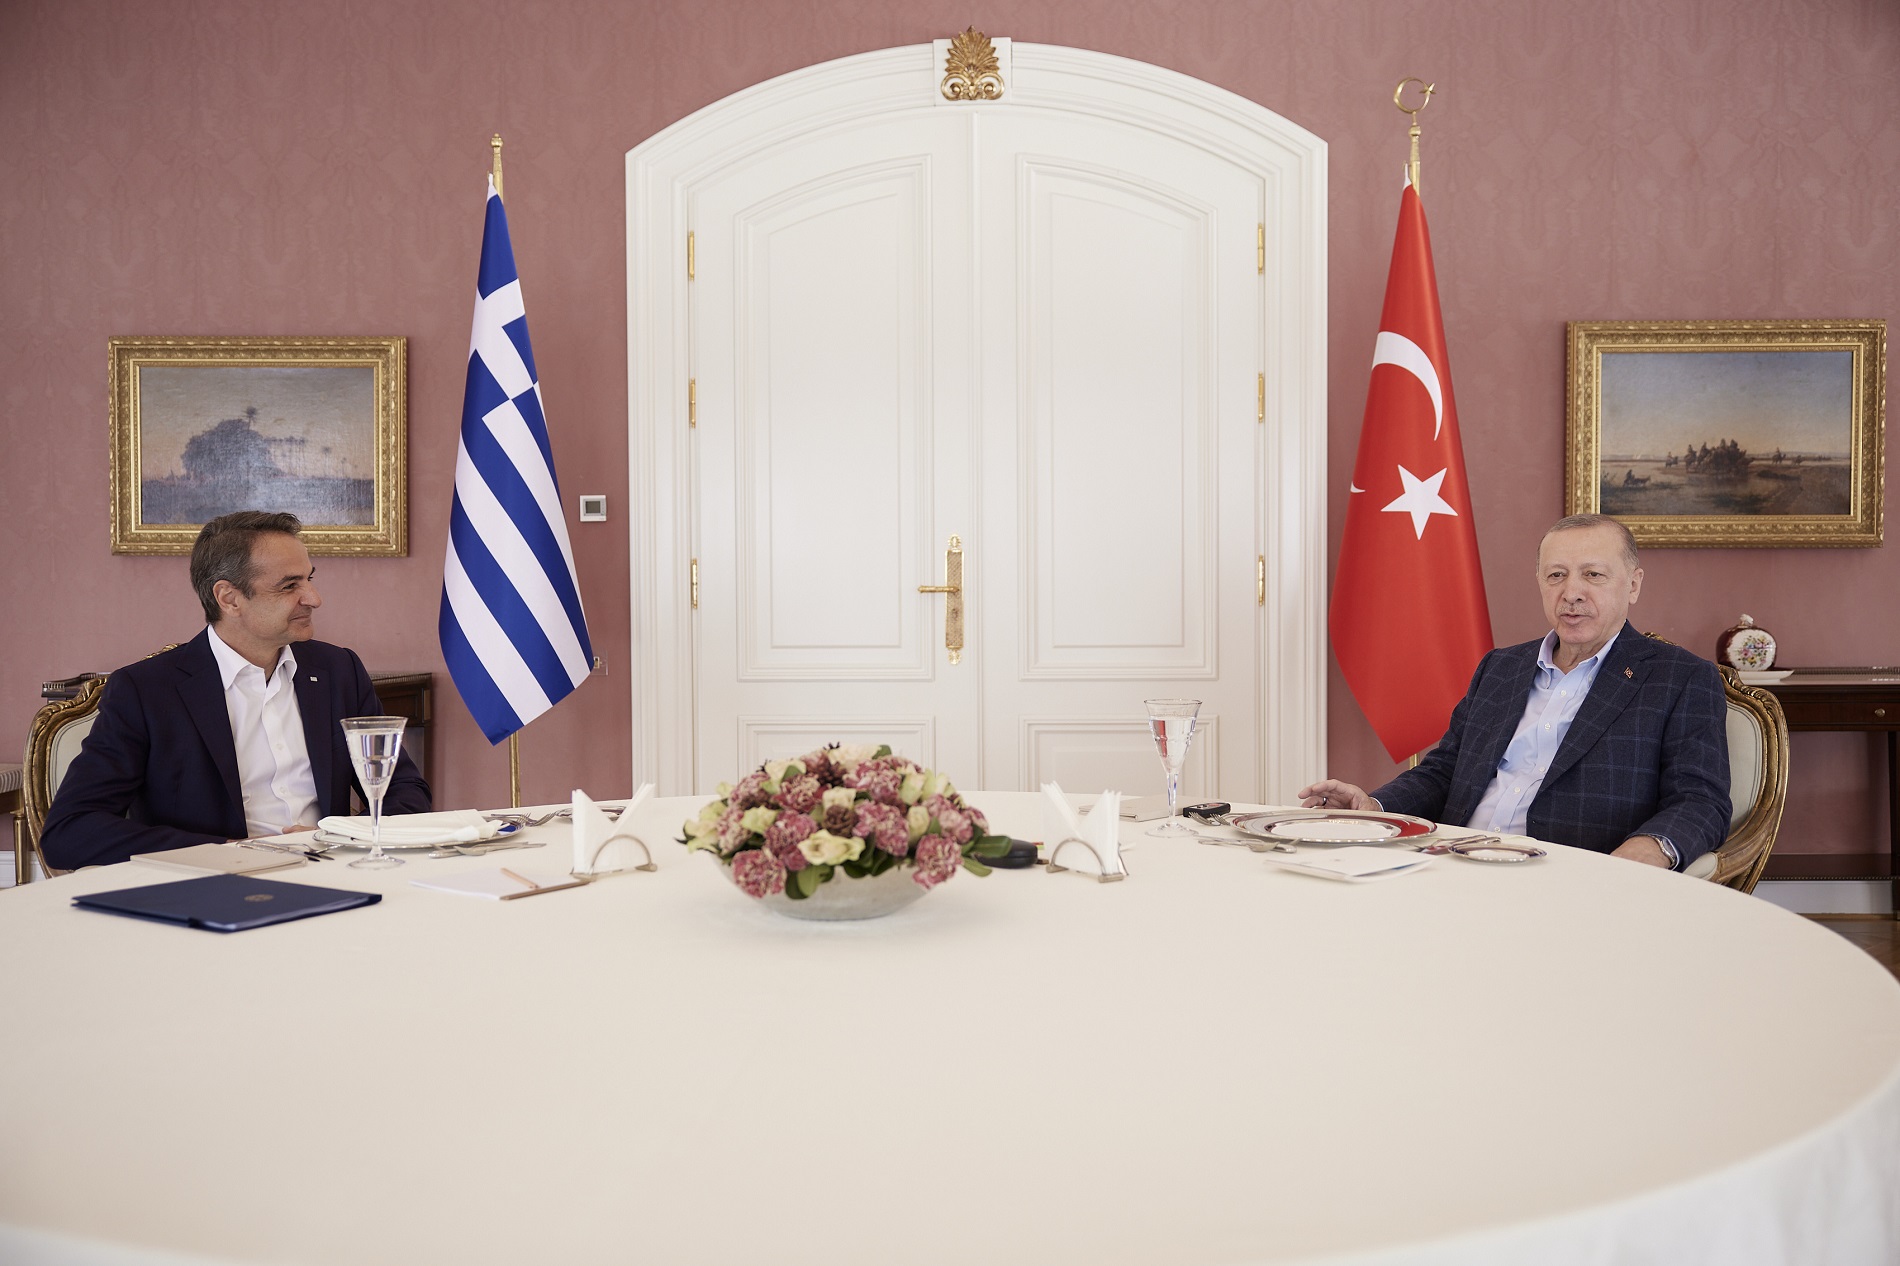 Μητσοτάκης για συνάντηση με Ερντογάν: Βάλαμε θεμέλια για βελτίωση των σχέσεων με την Τουρκία